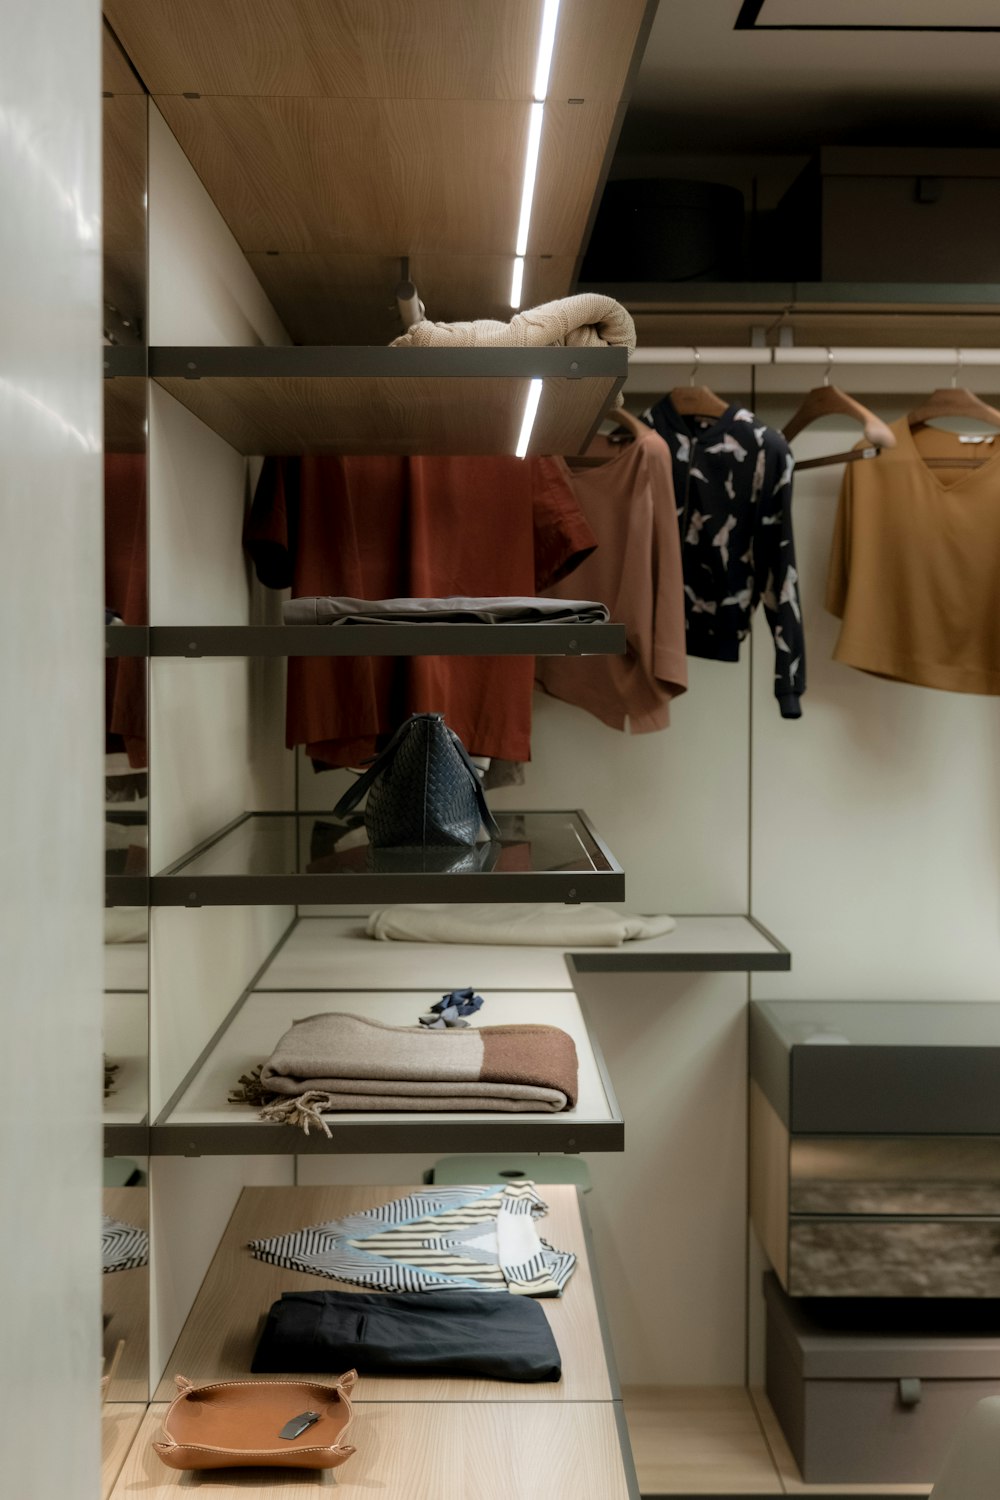 Un armario con mucha ropa en las estanterías